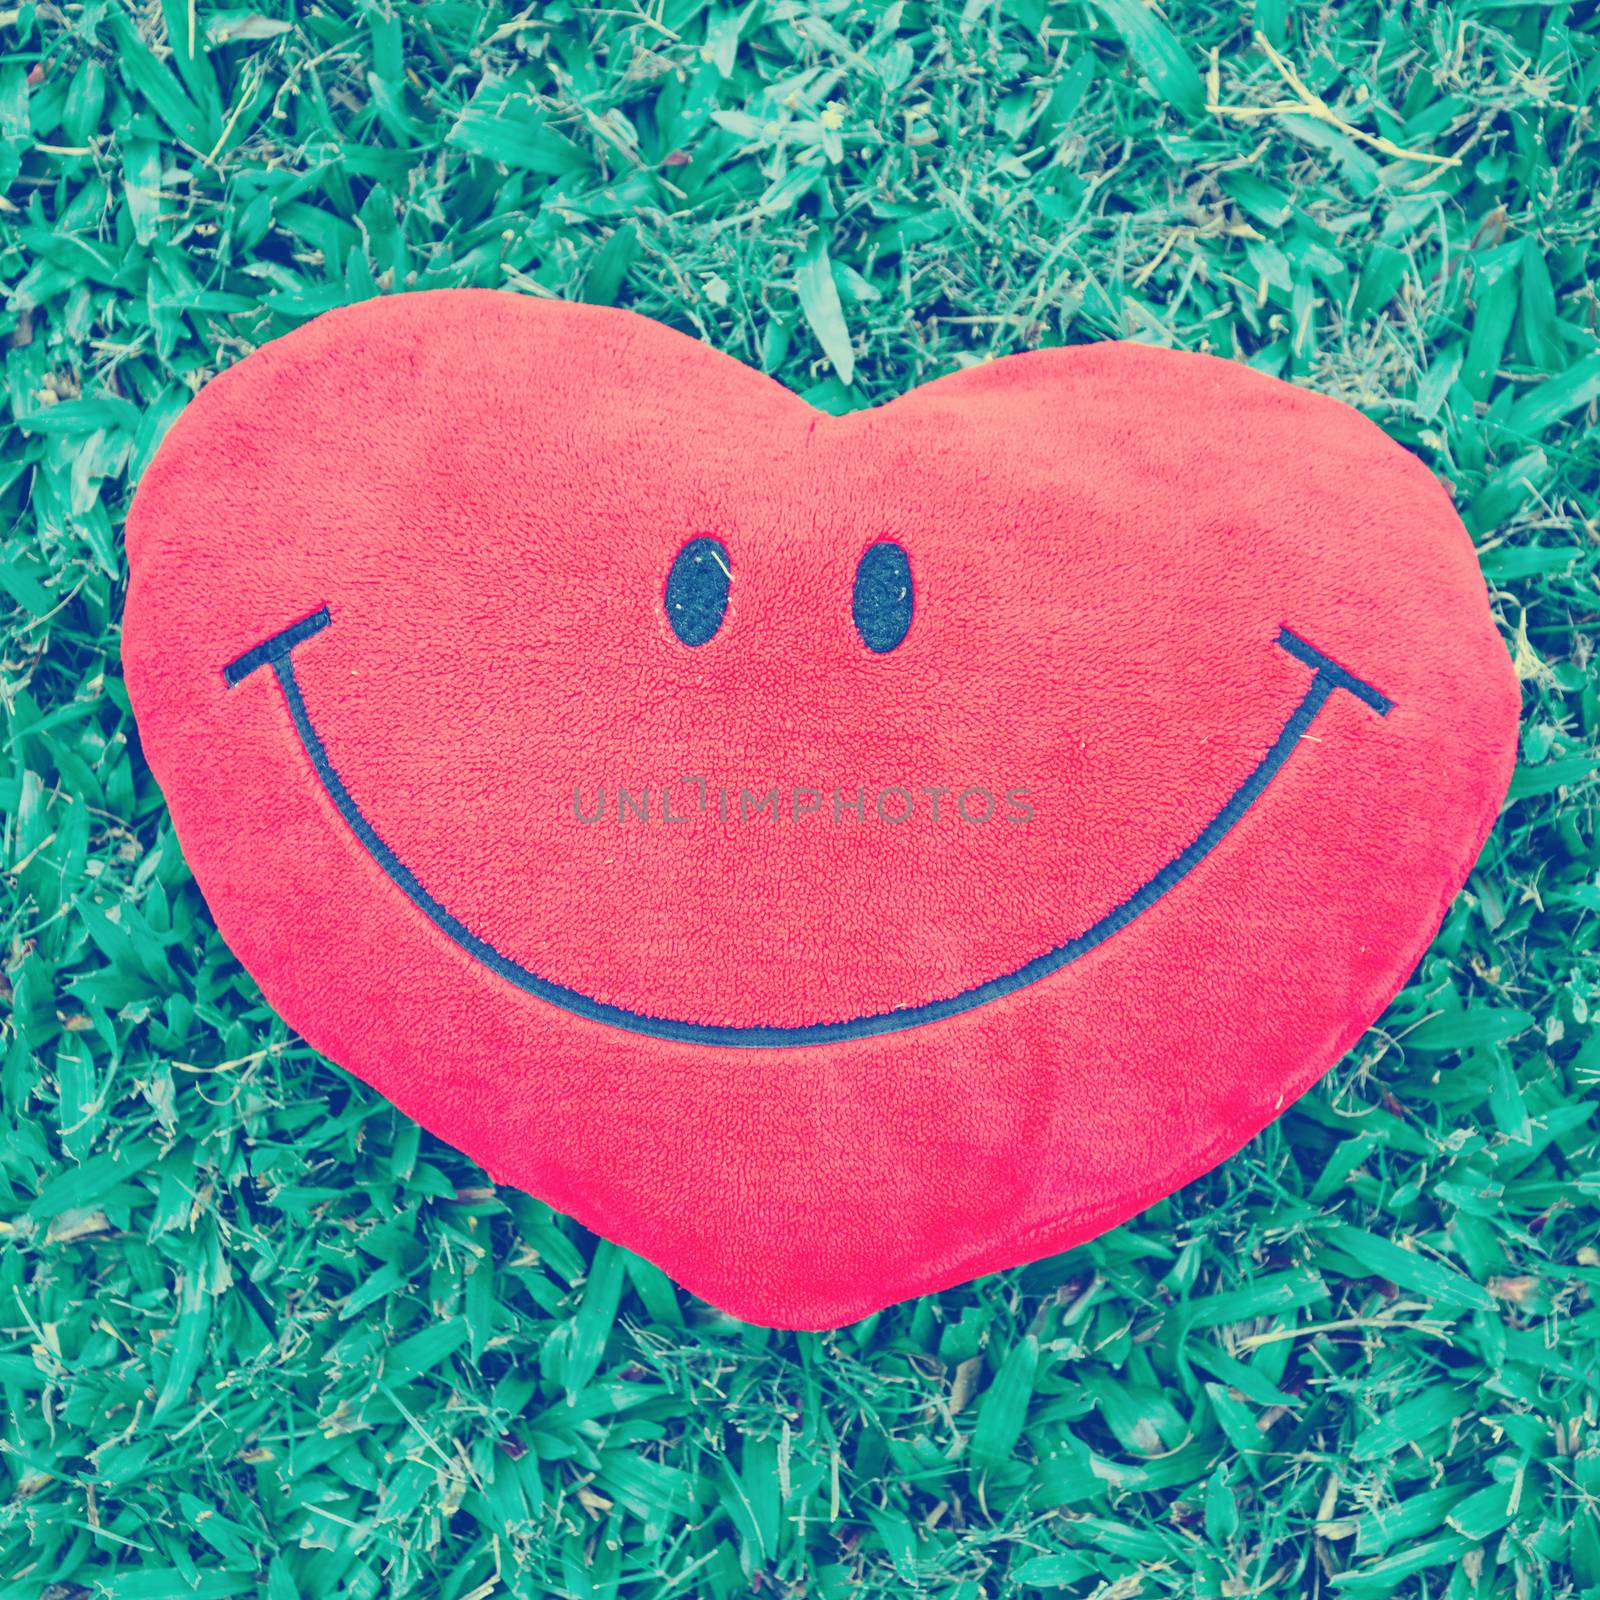 Big love heart shape pillow on green grass